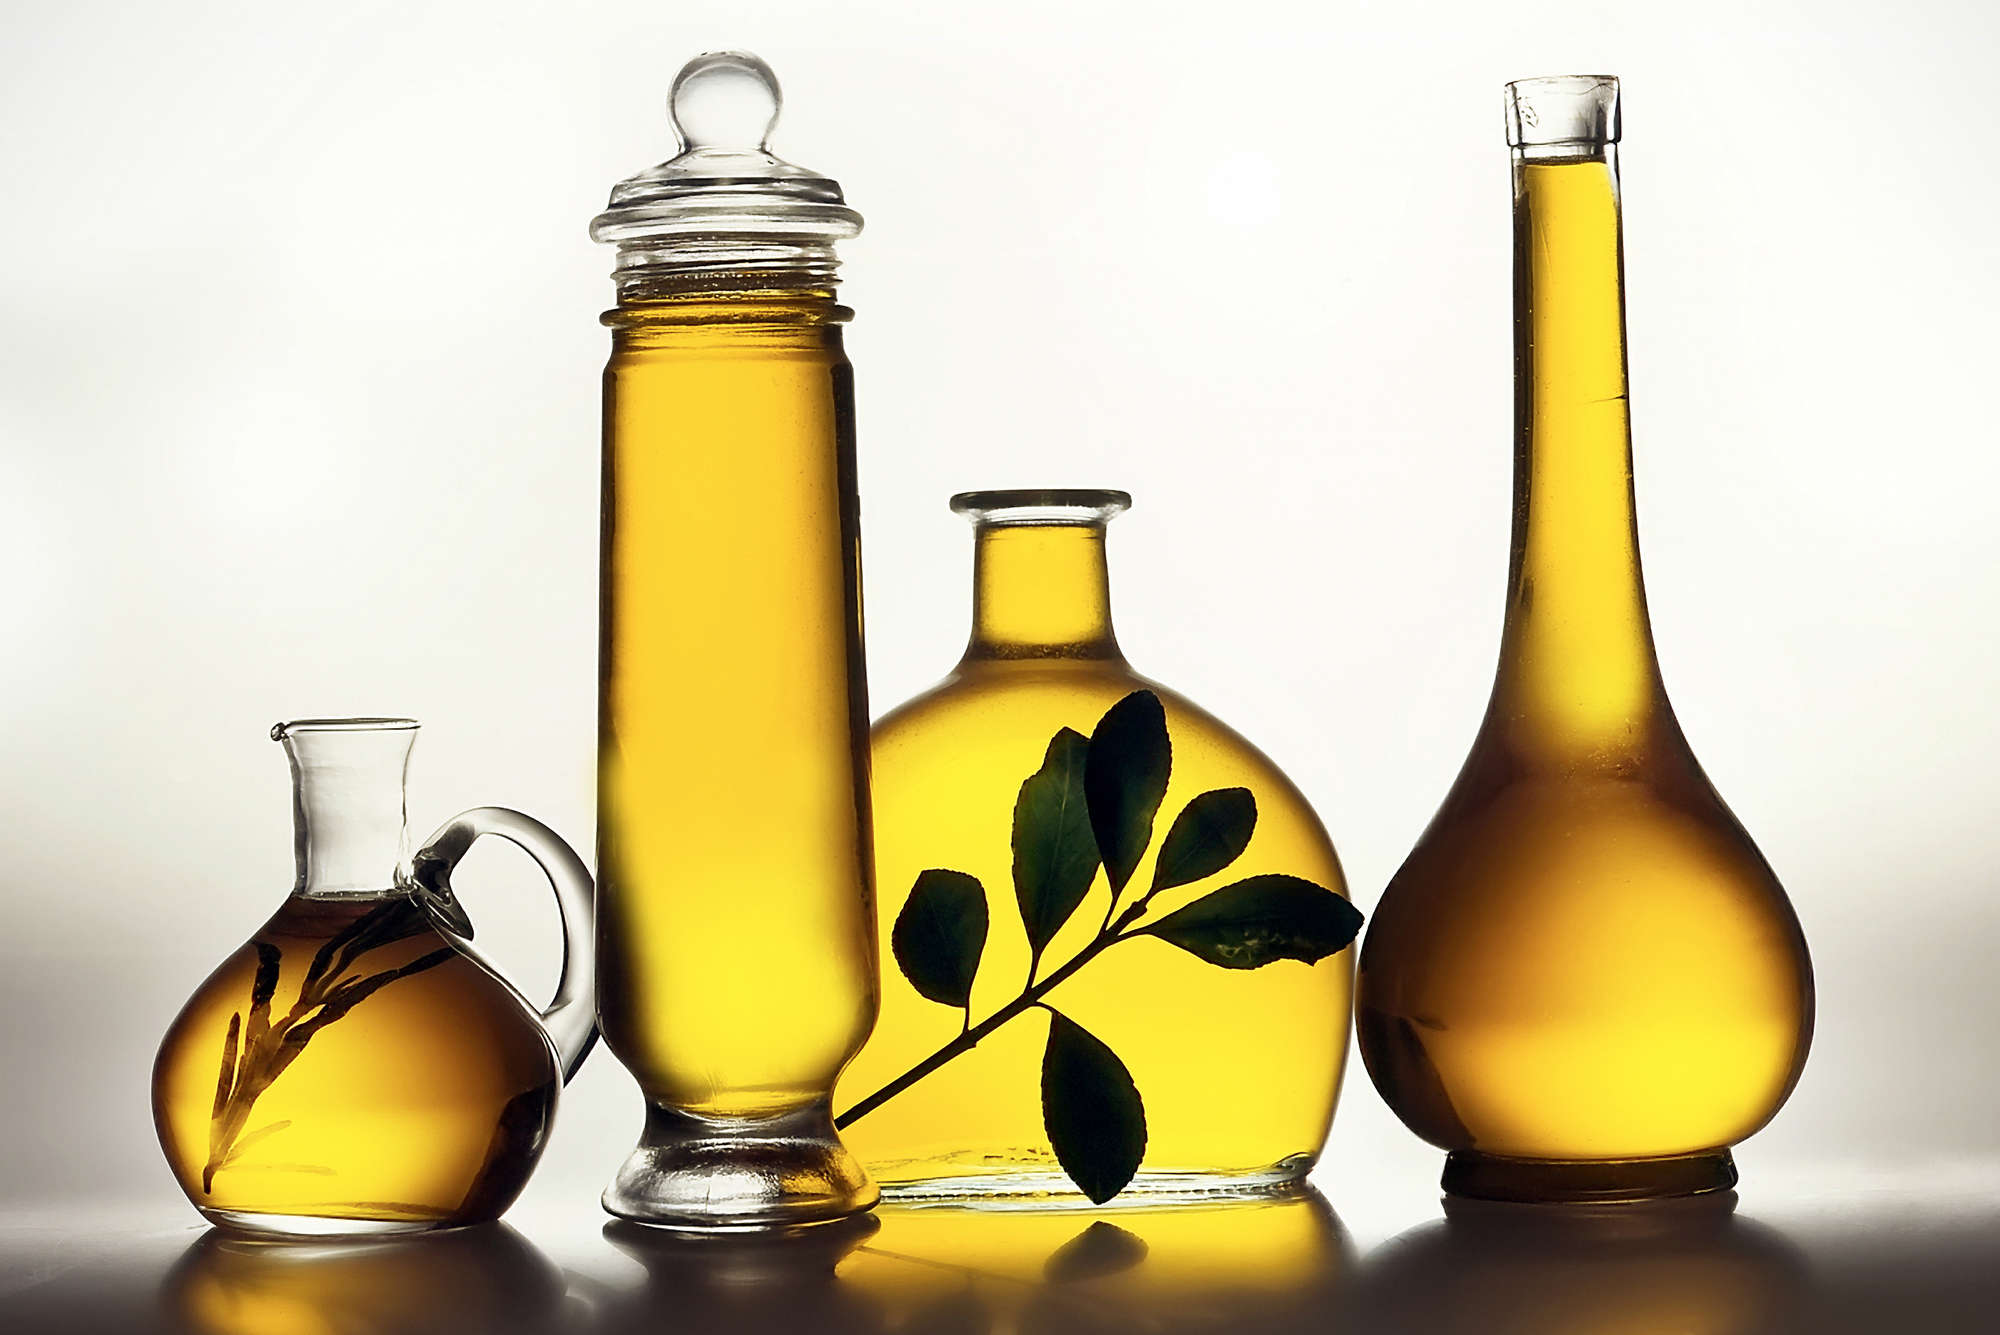             papiers peints à impression numérique bouteilles d'huile d'olive - intissé structuré
        